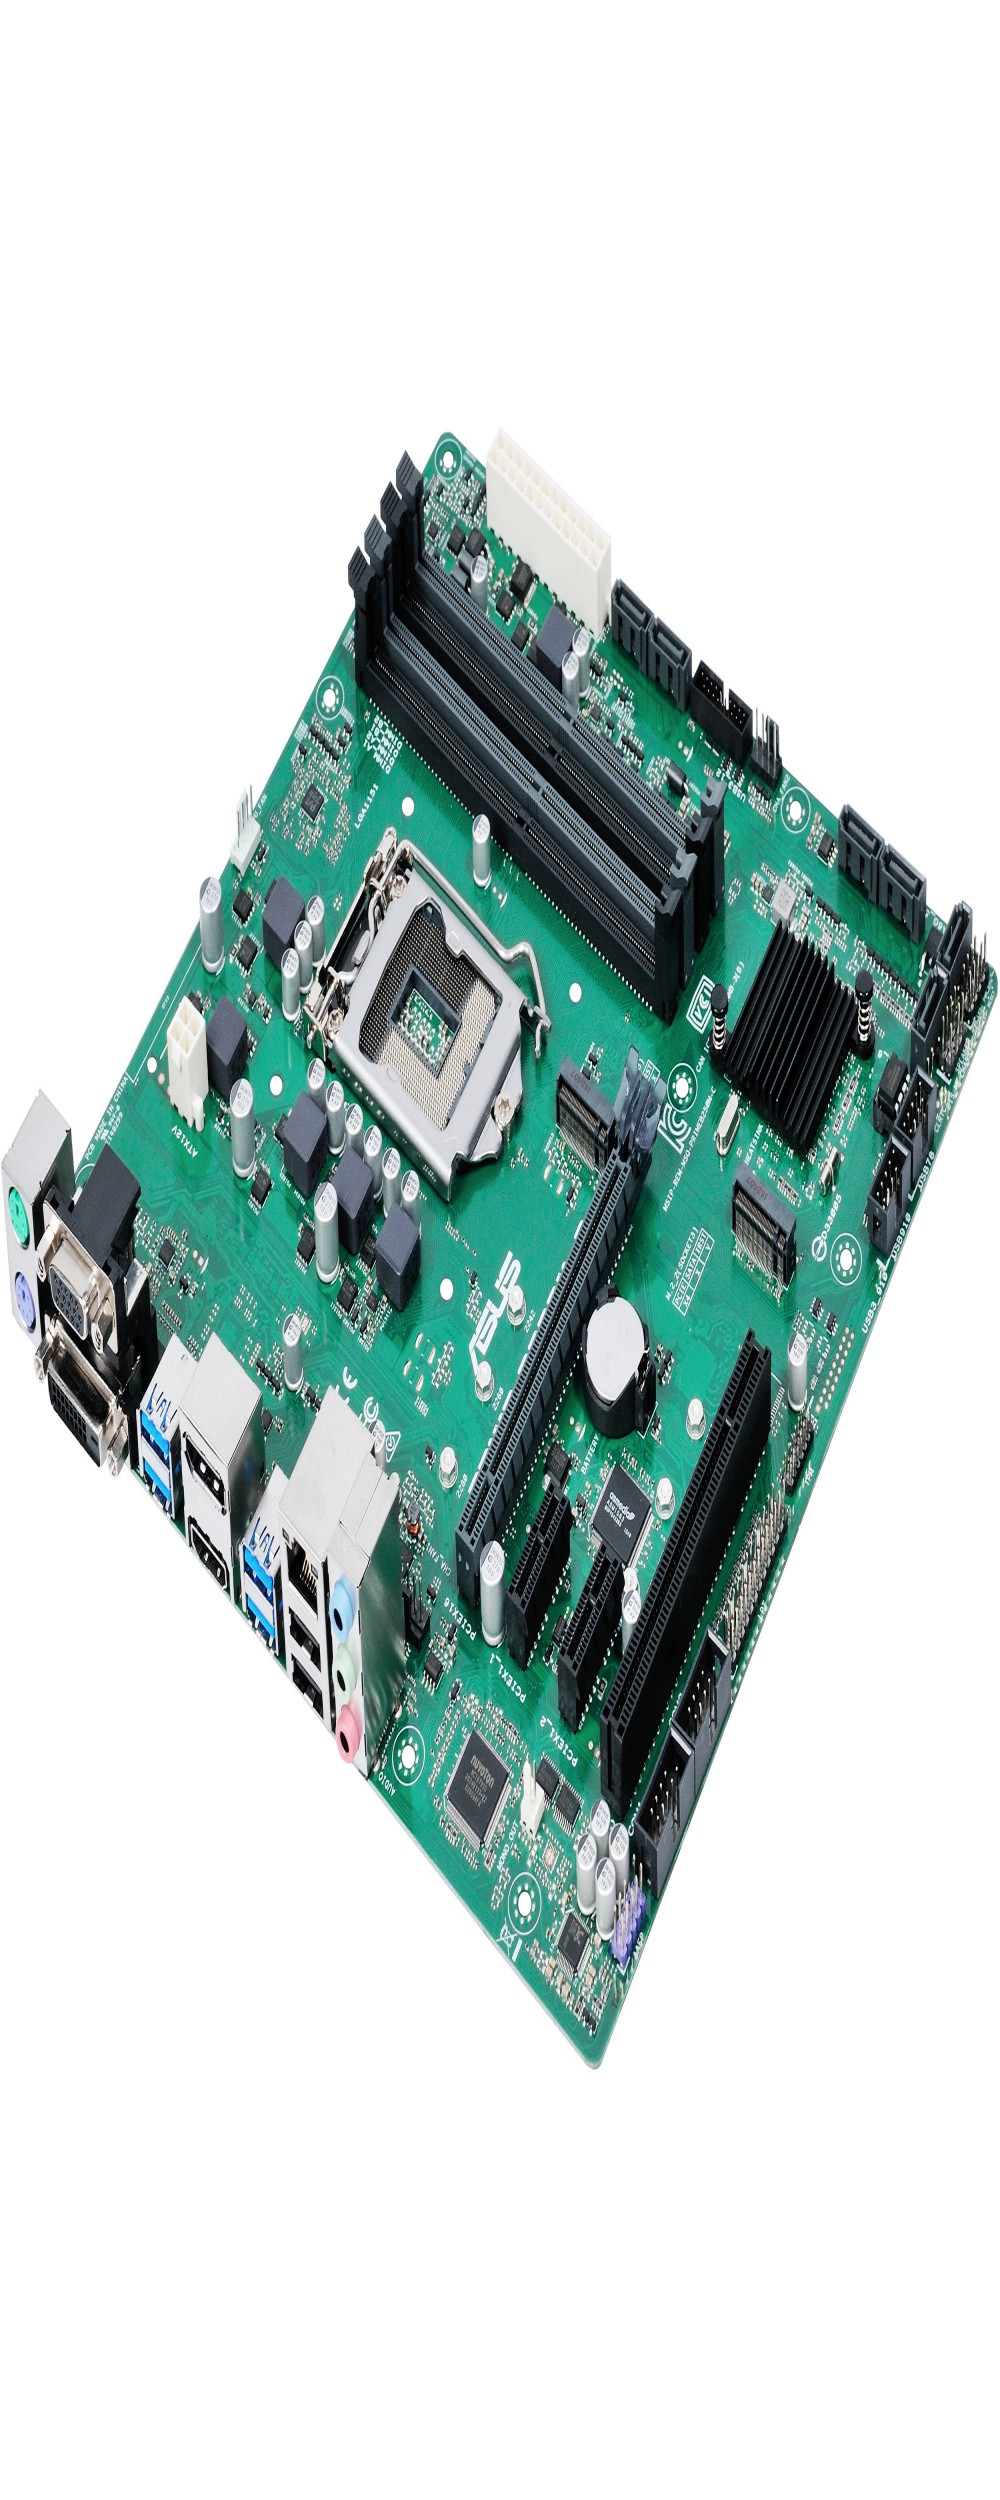 Placa Mãe Asus para Intel 1151 Prime B250M-C